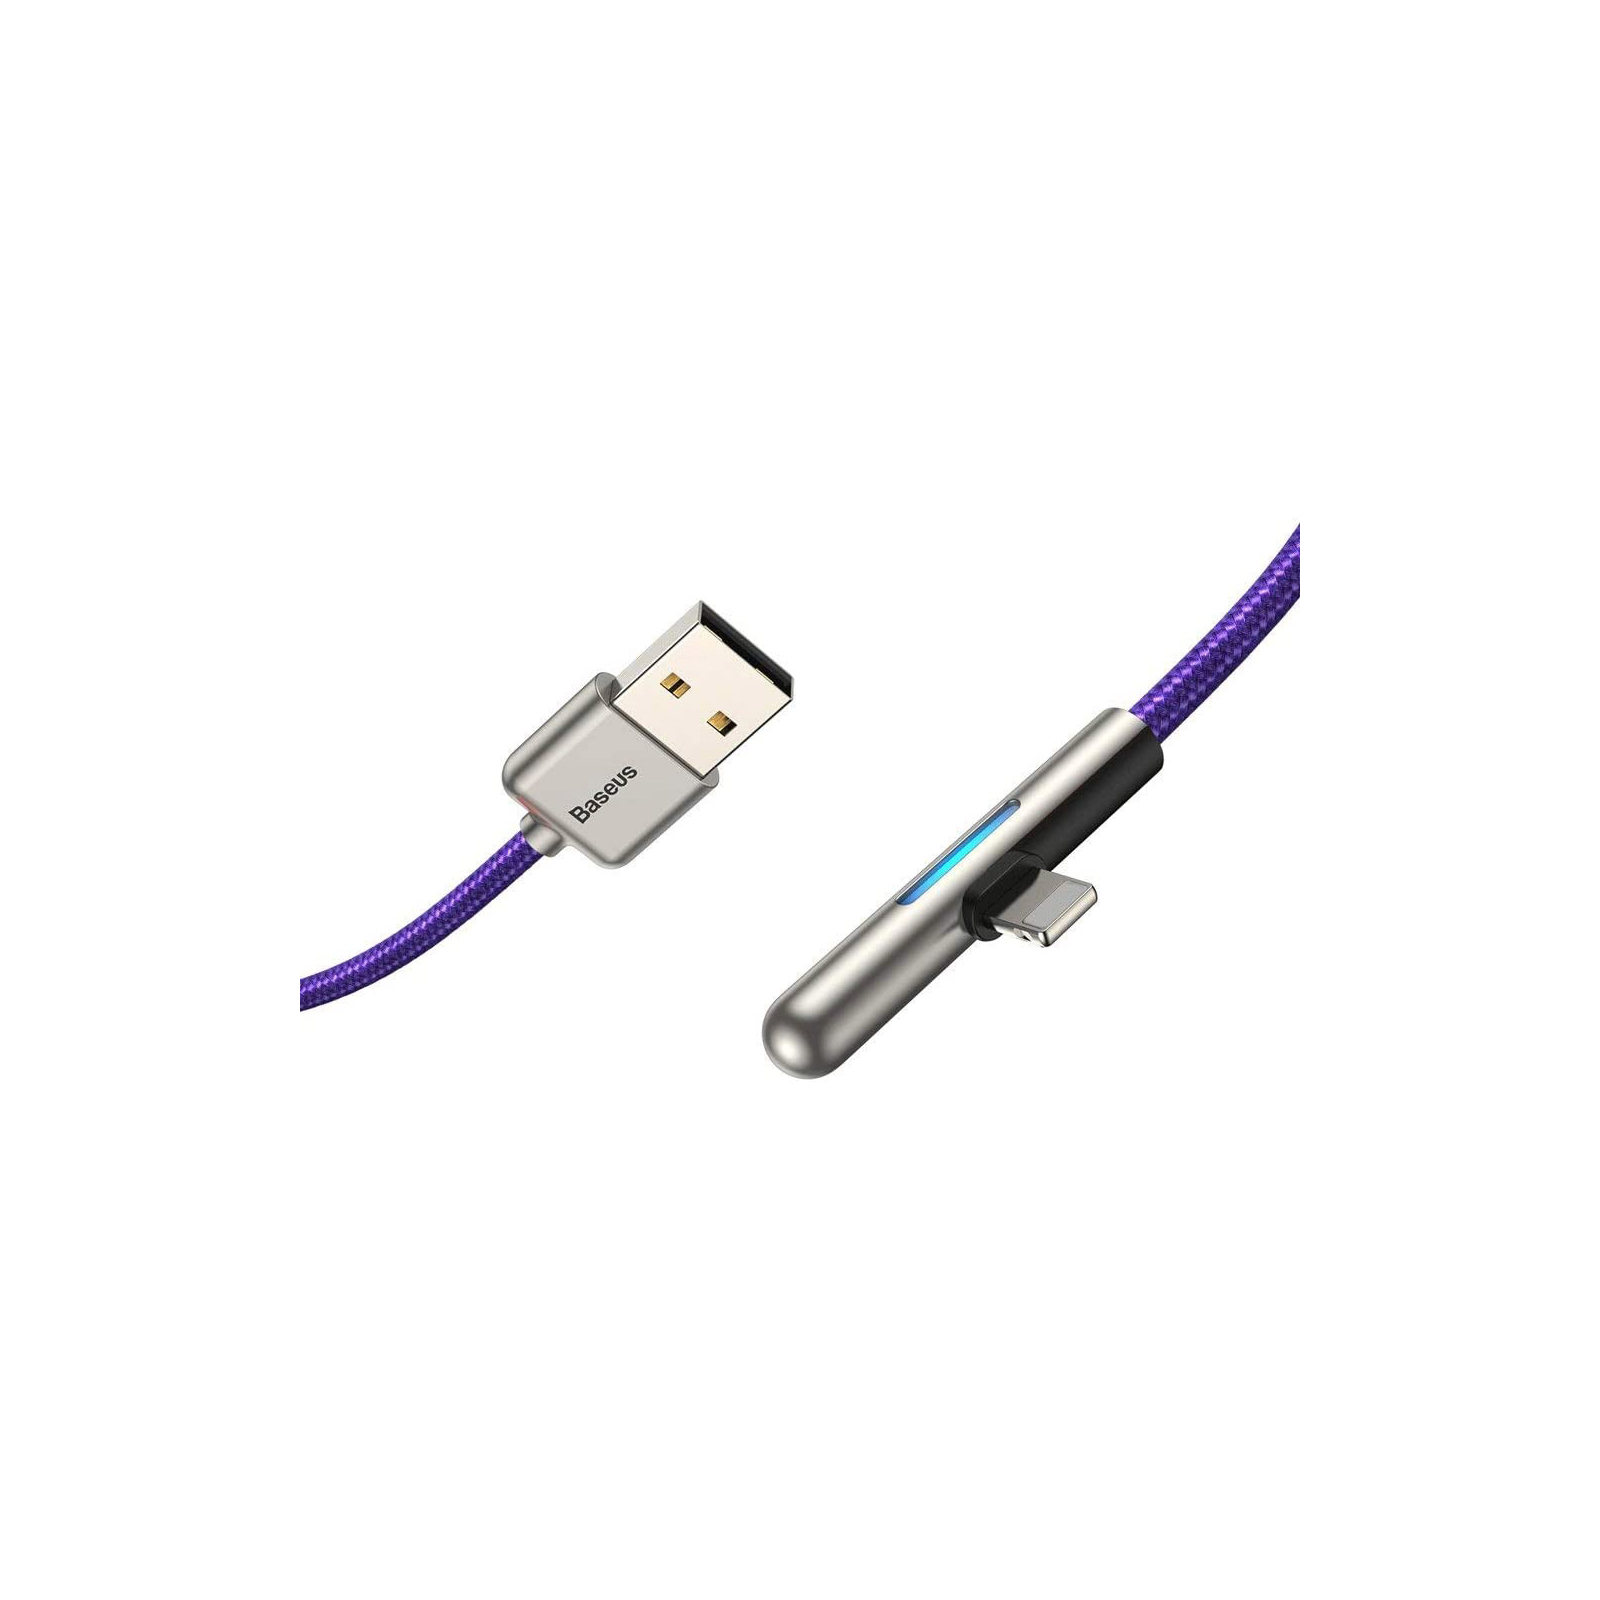 Дата кабель USB 3.1 AM to Lightning 2.0m CAL7C 1.5A 90 Purple Baseus (CAL7C-B05) изображение 2